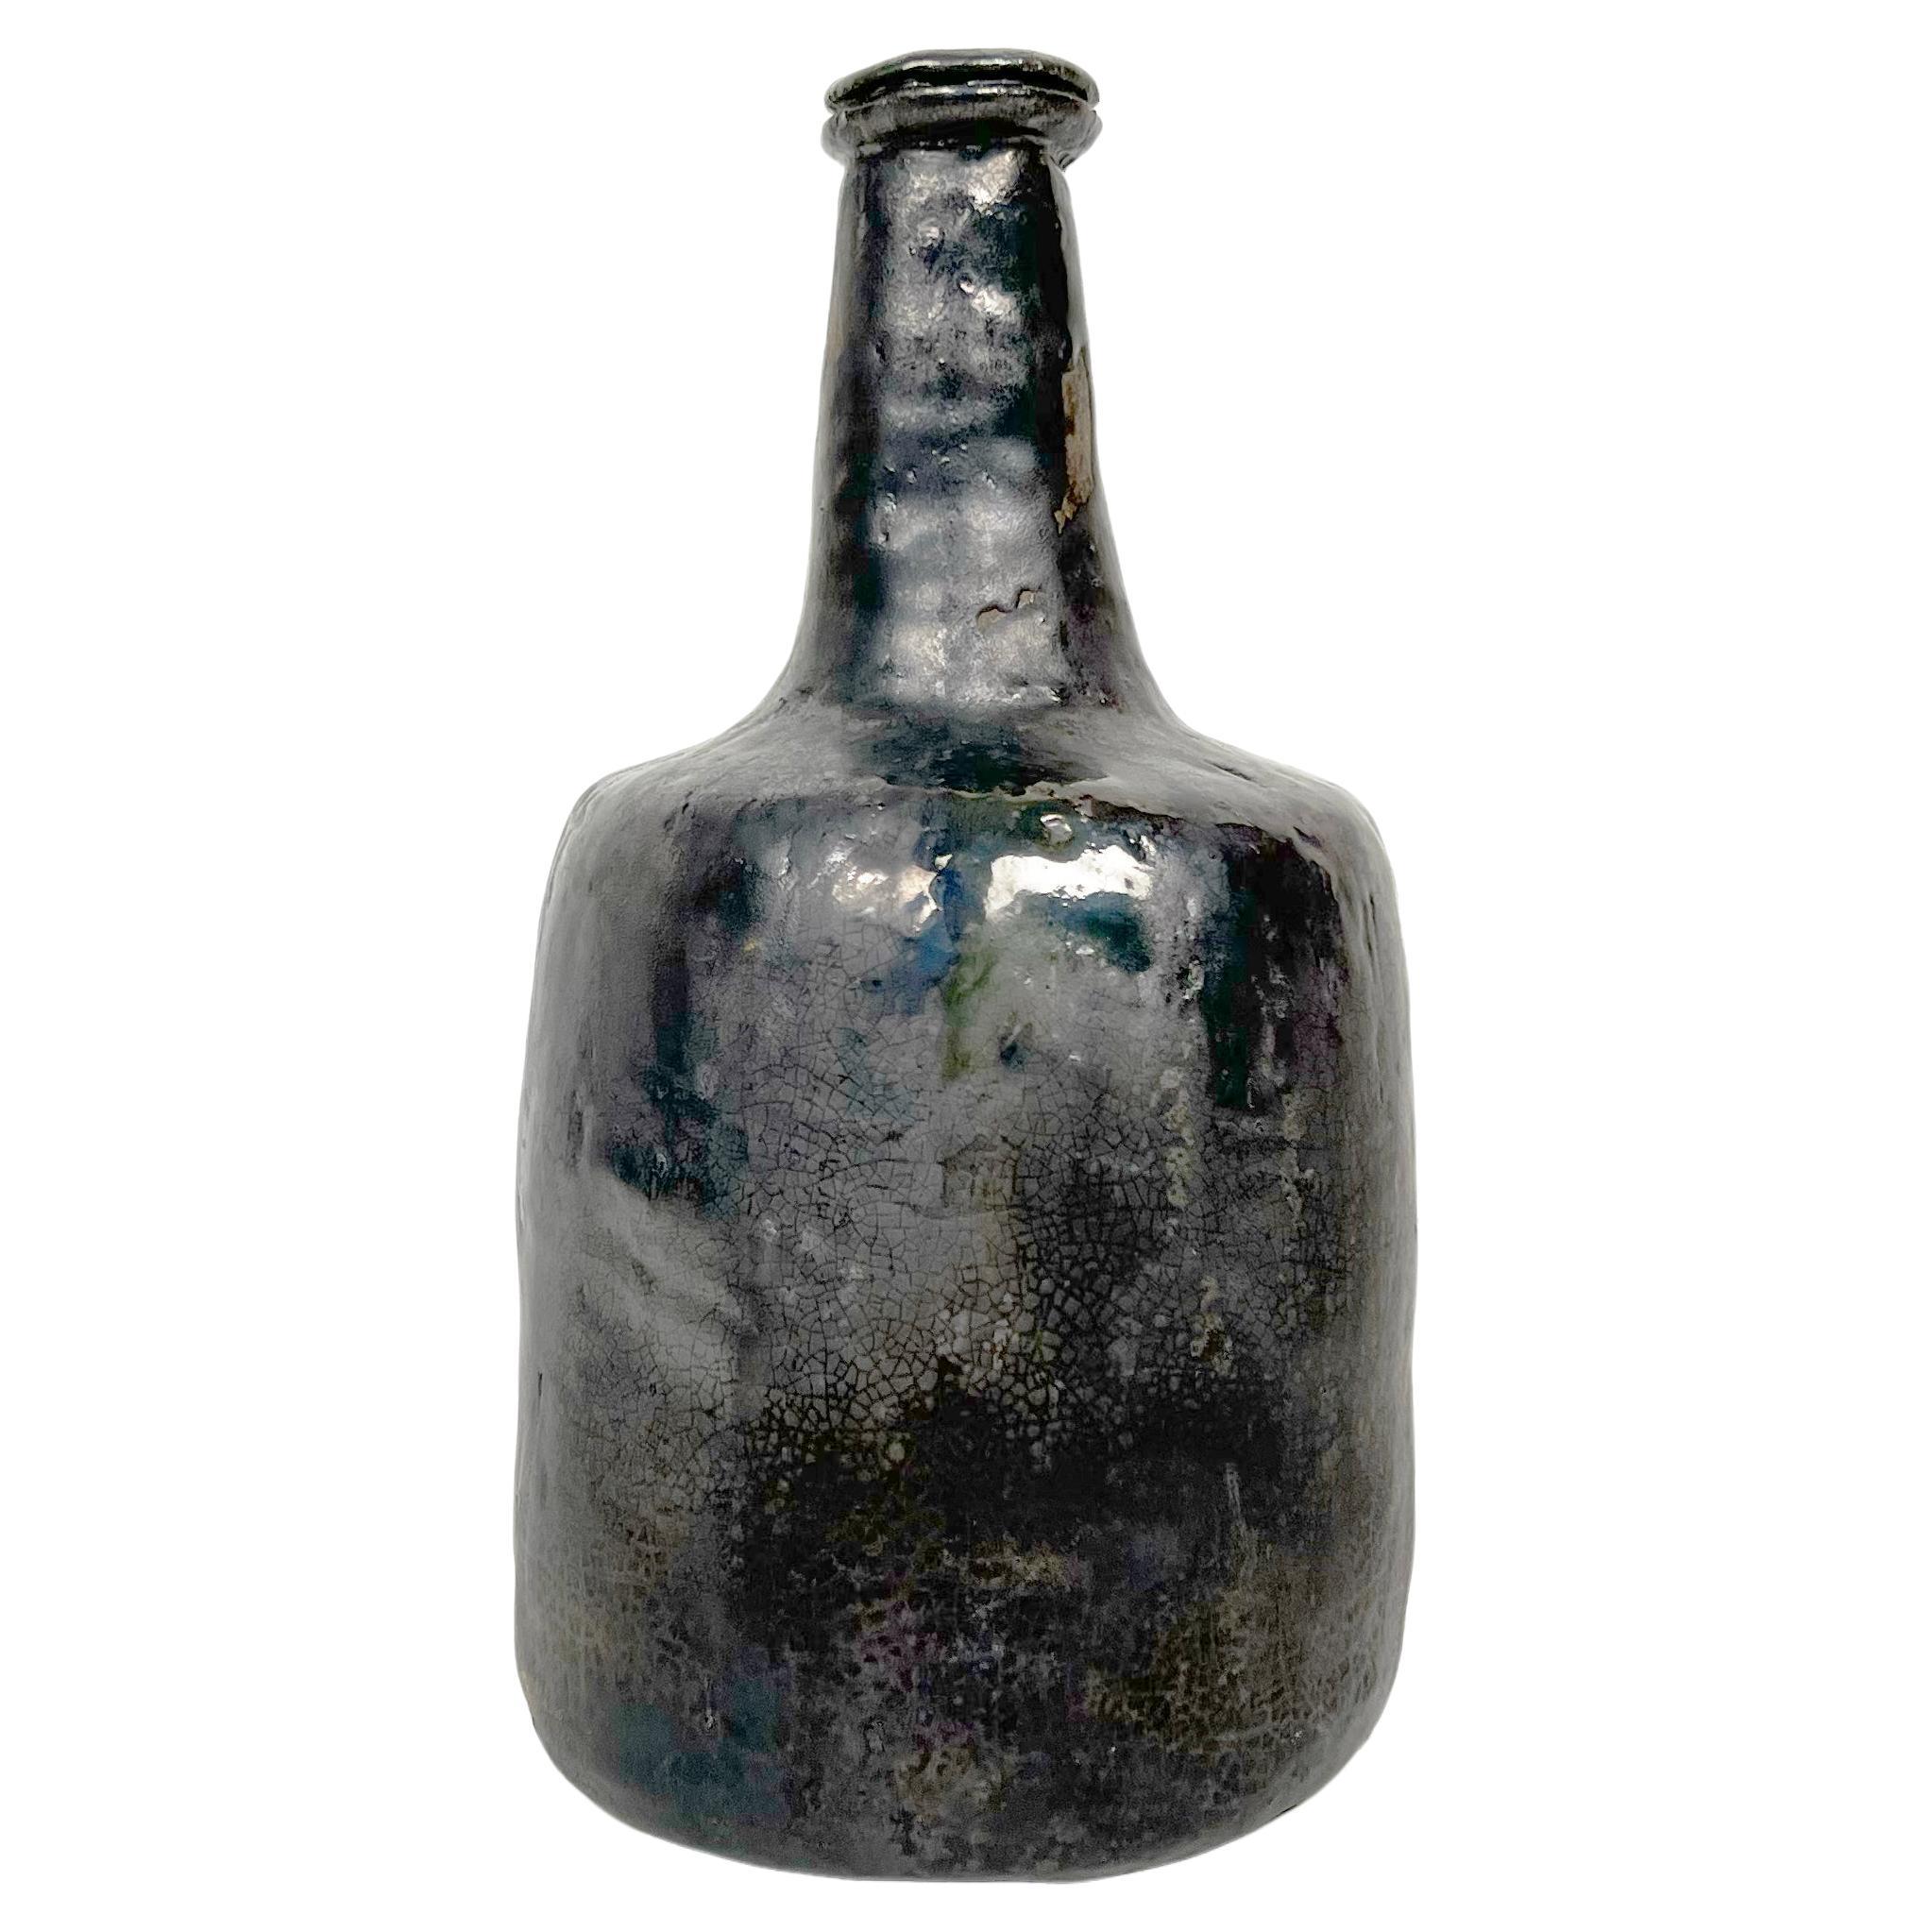 Vintage Hand Made Crude Keramik Flasche Vase